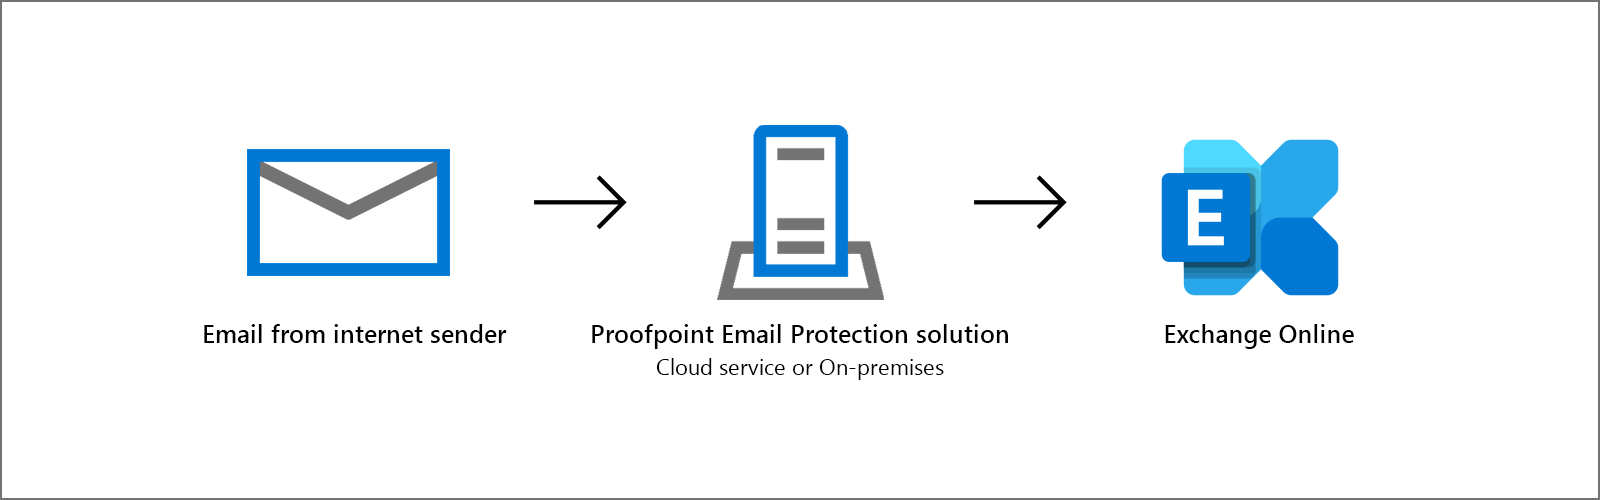 Uma configuração popular para filtragem de e-mail com o Proofpoint e Exchange Online.